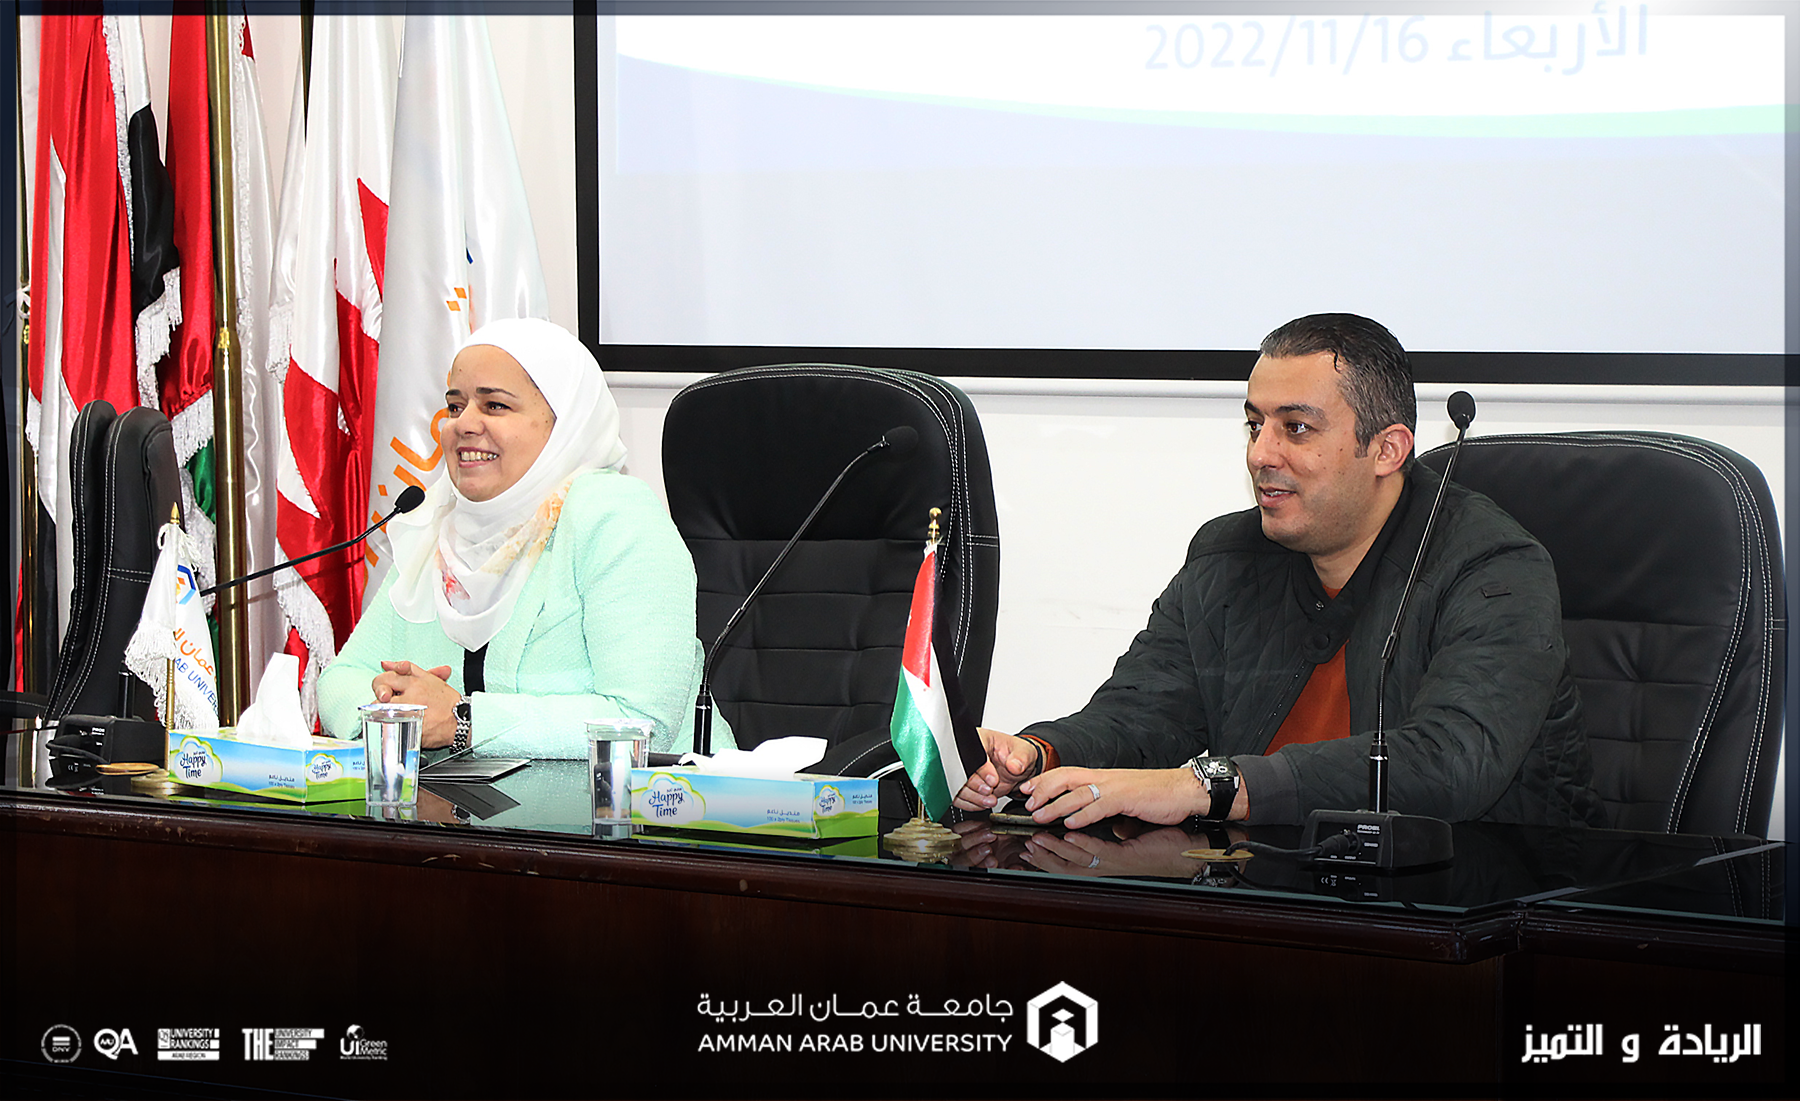 صيدلة "عمان العربية" تشجع طلبتها على الإبداع والابتكار والتميز